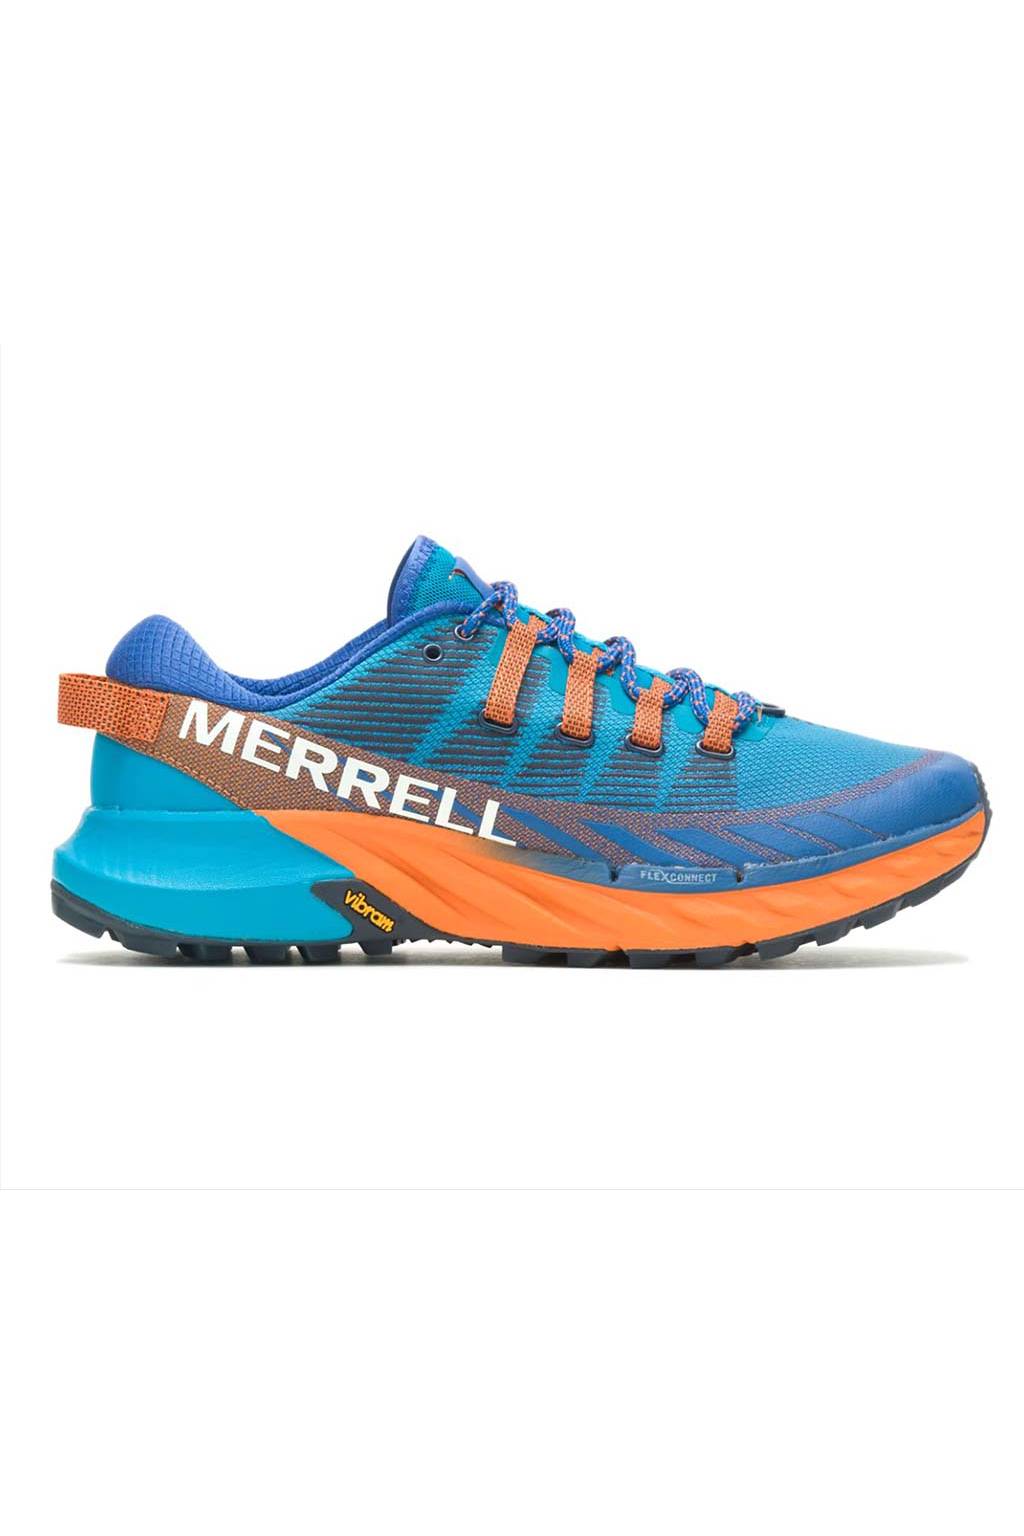 MERRELL Agility Peak 4 J135111 de Course de Trail Baskets Chaussures Hommes 